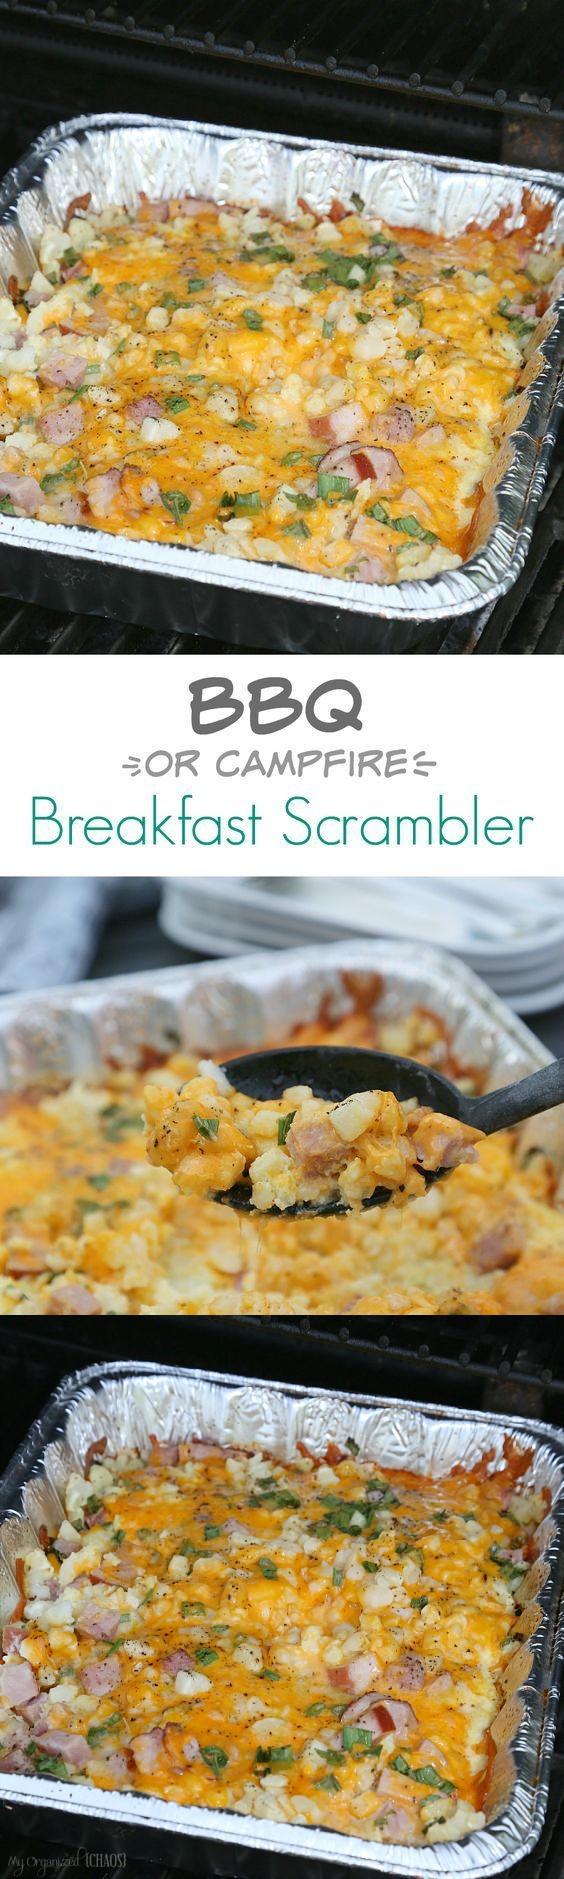 BBQ Breakfast Scrambler